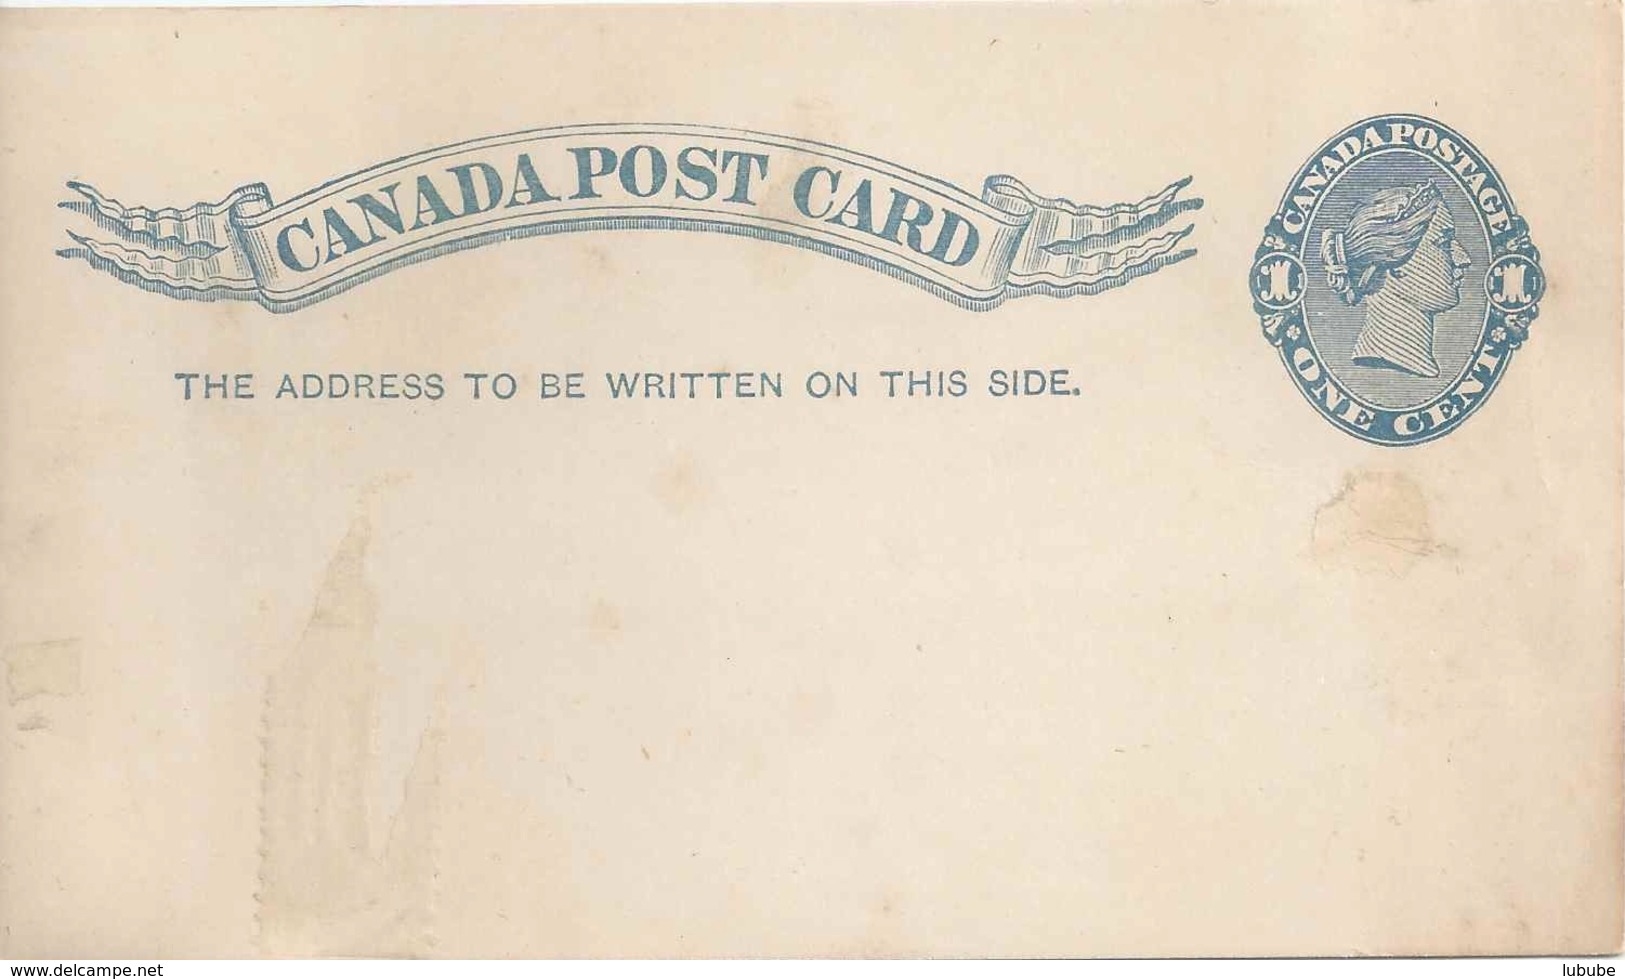 Post Card, 1 C.blau          Ca. 1875 - 1860-1899 Victoria